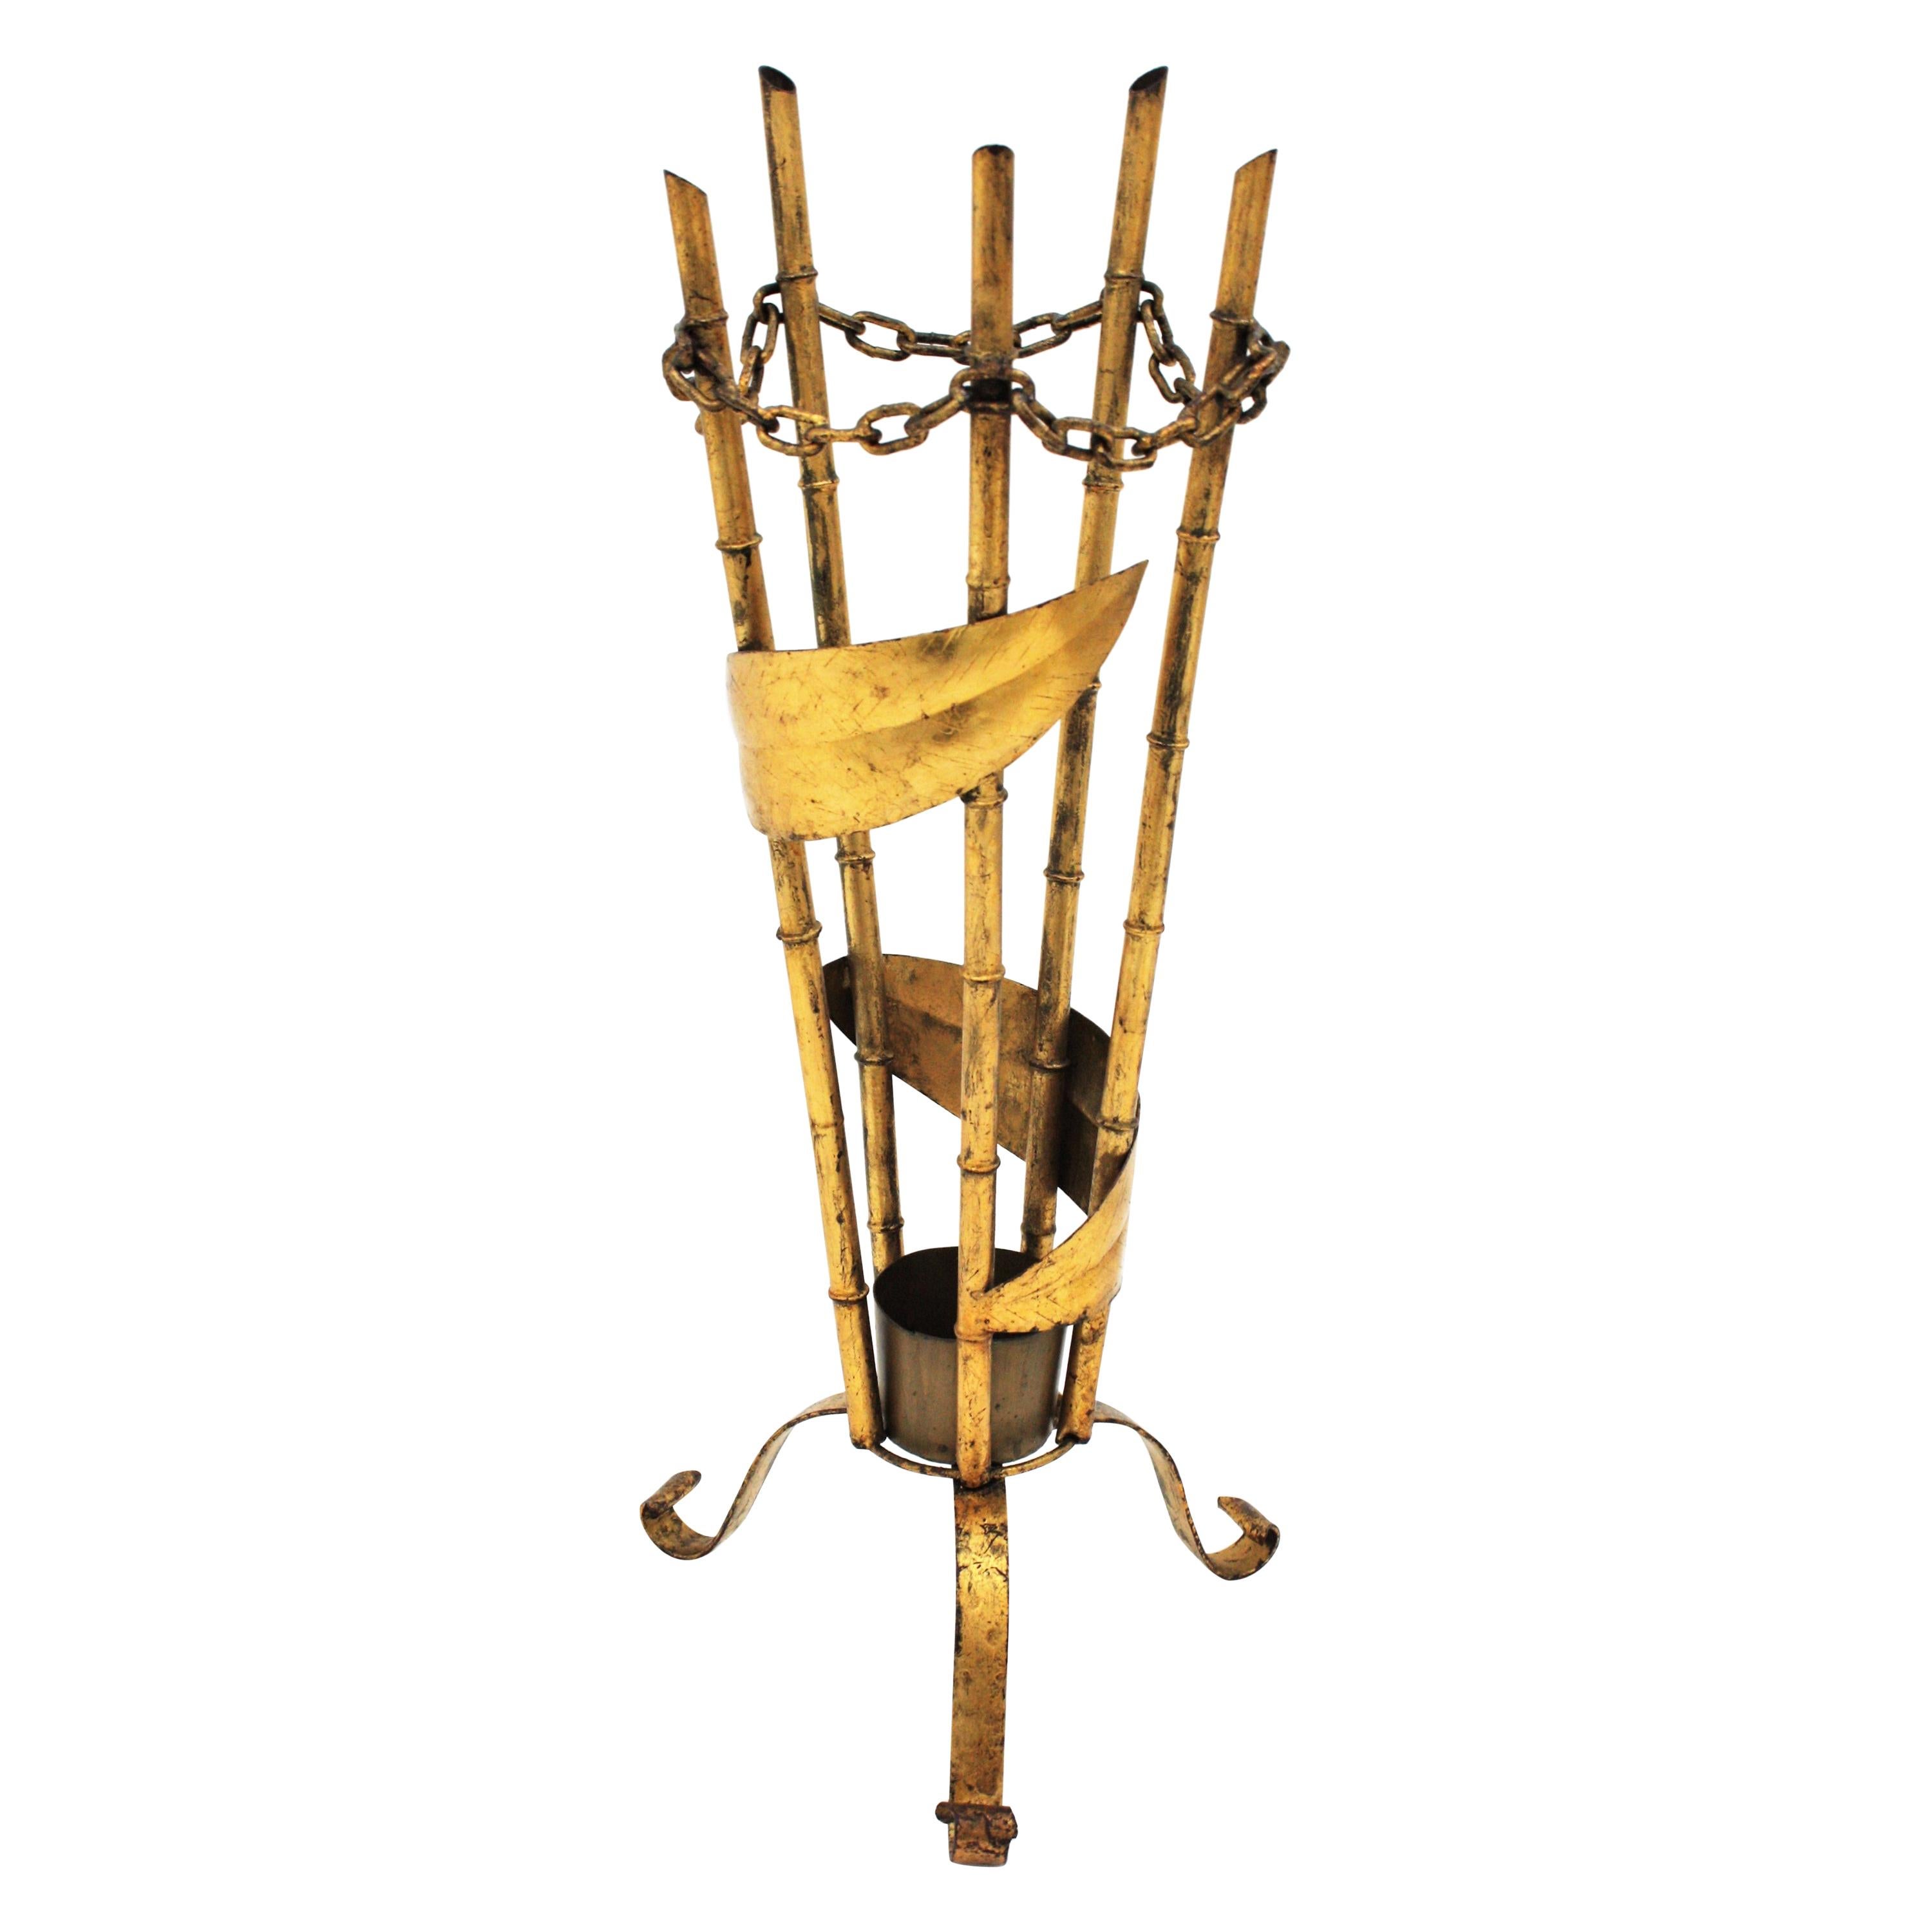 Stand parapluie en fer doré espagnol, design en faux bambou